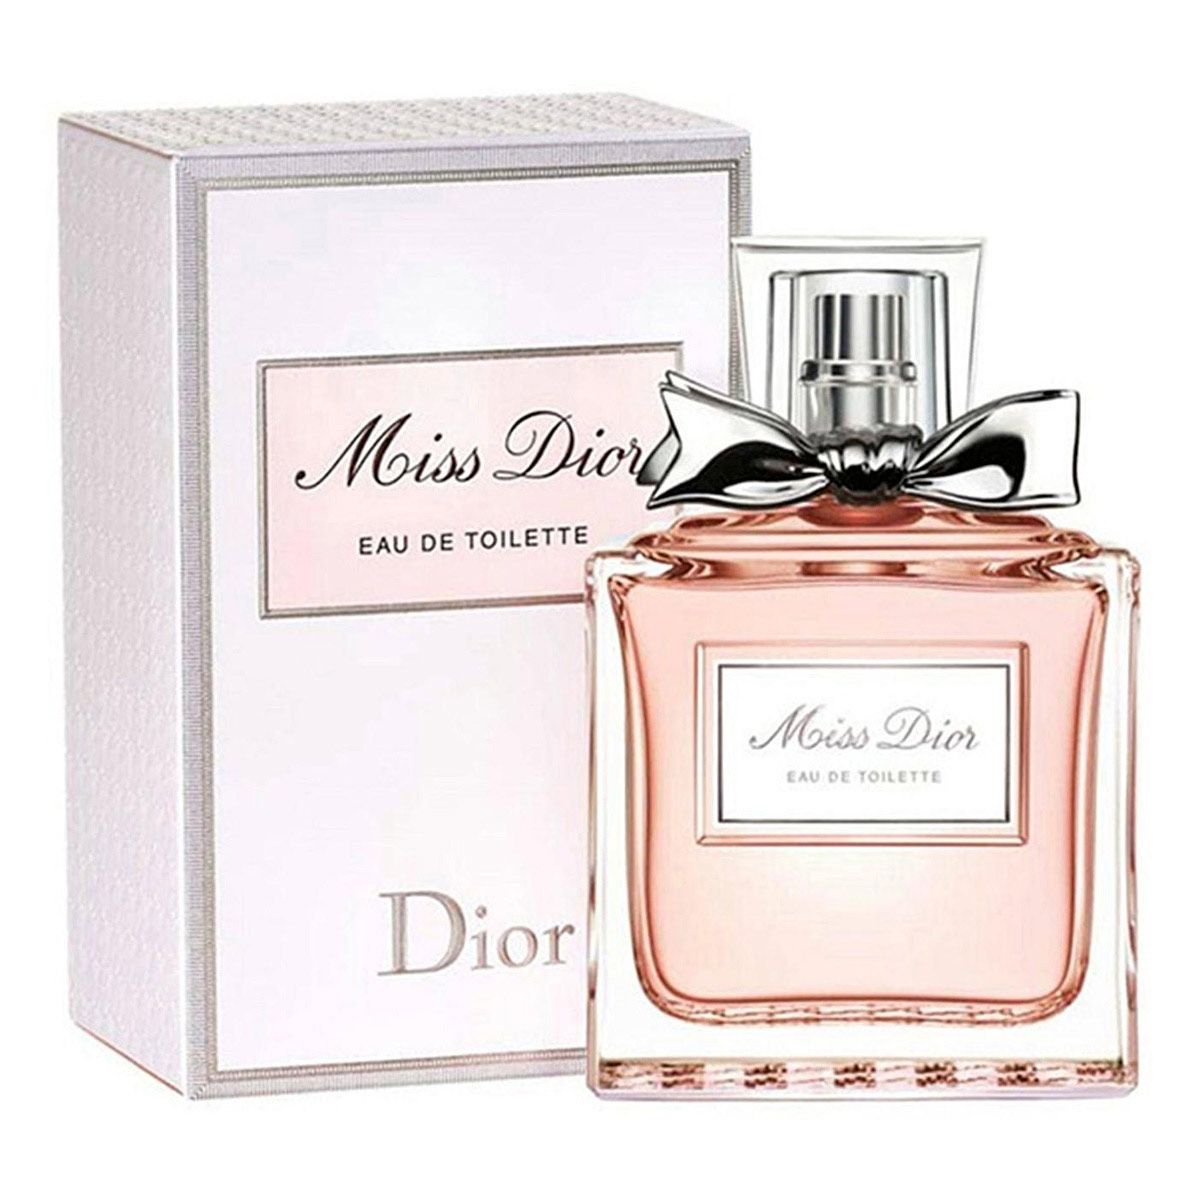  Dior Miss Dior Eau de Toilette 